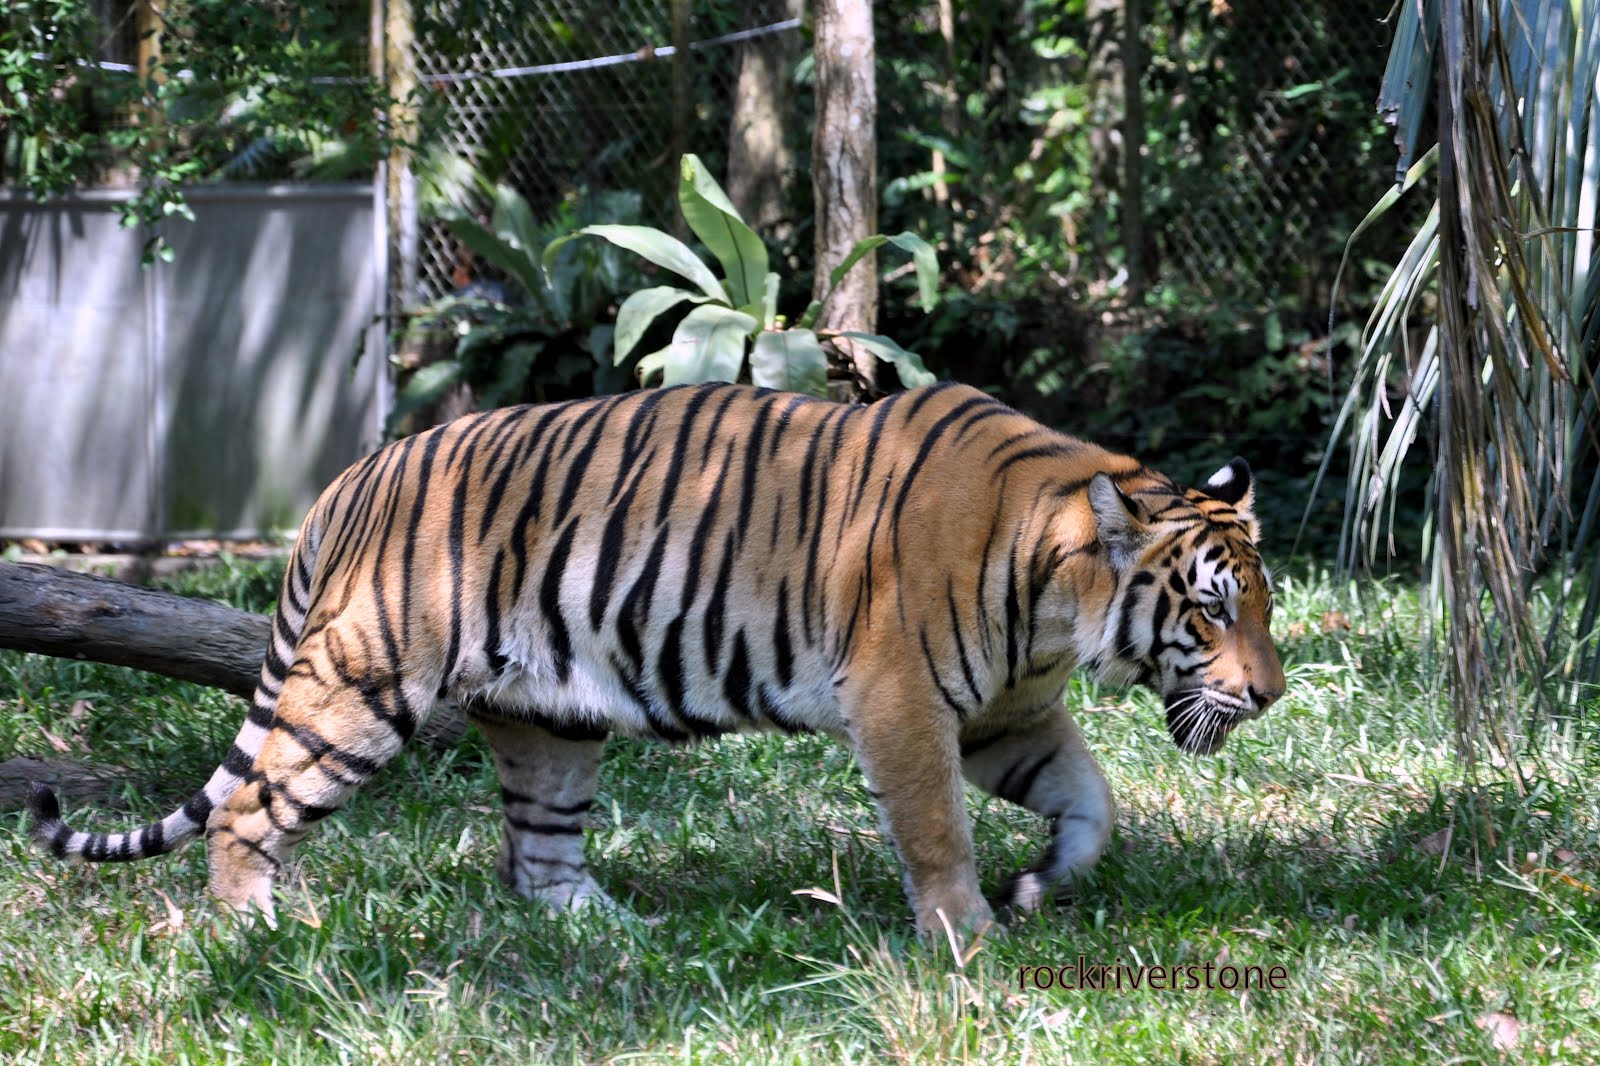 rockriverstone Malayan Tiger Harimau Belang 